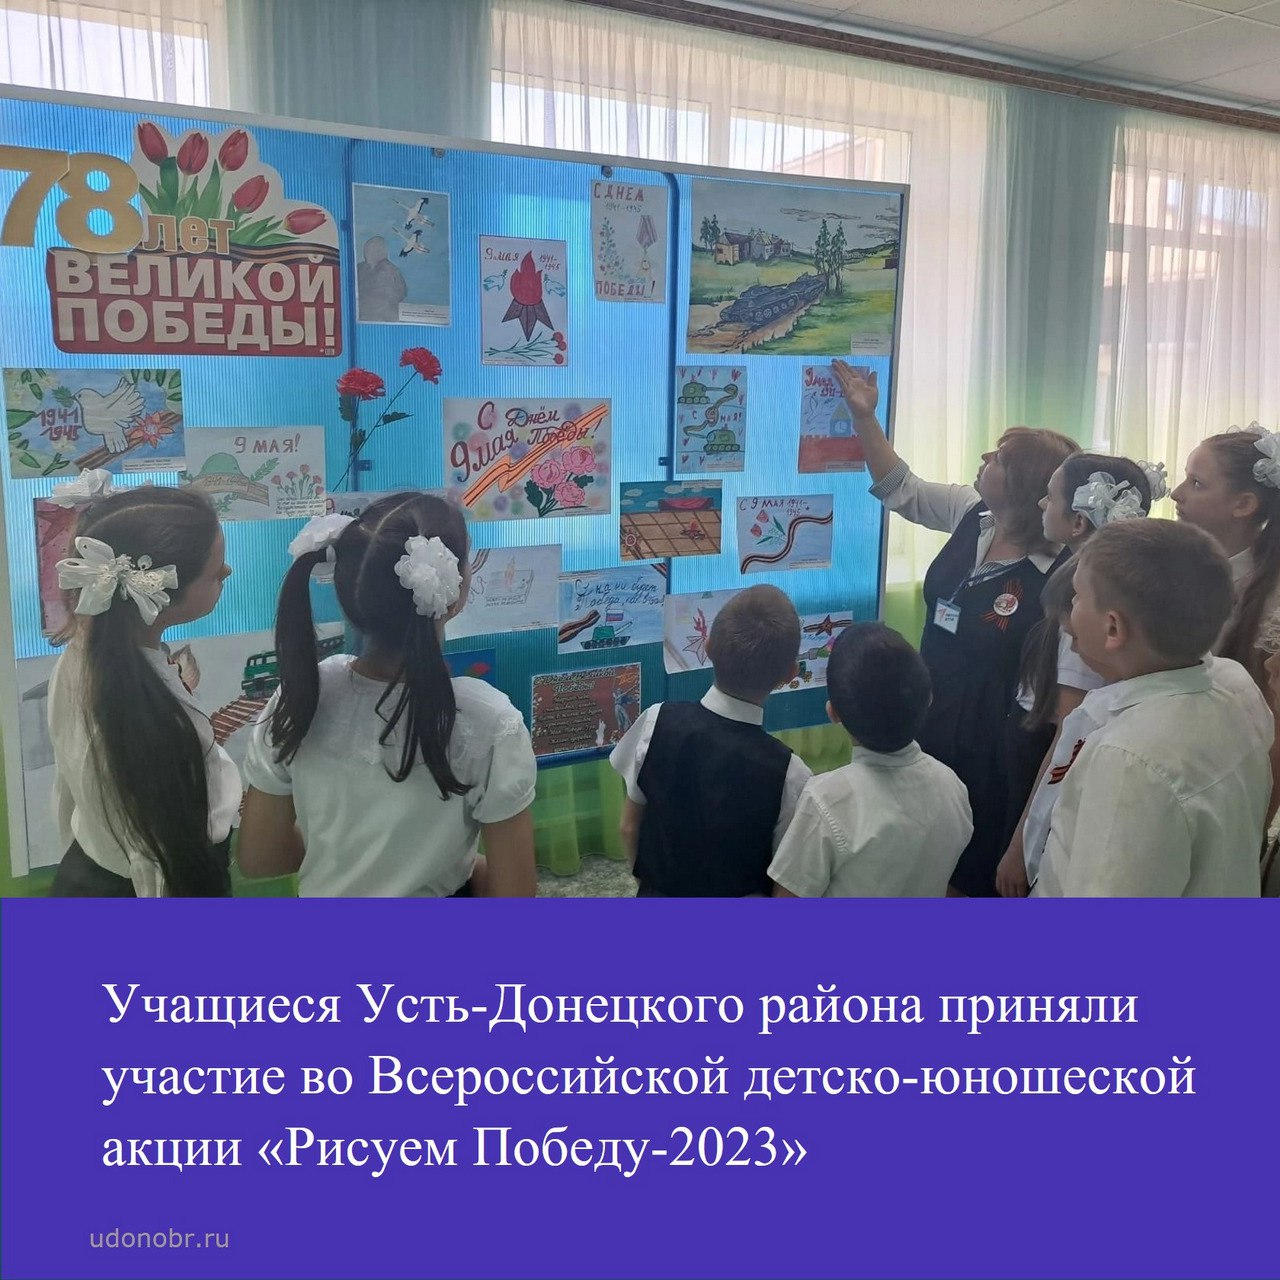 Учащиеся Усть-Донецкого района приняли участие во Всероссийской детско-юношеской акции «Рисуем Победу-2023»